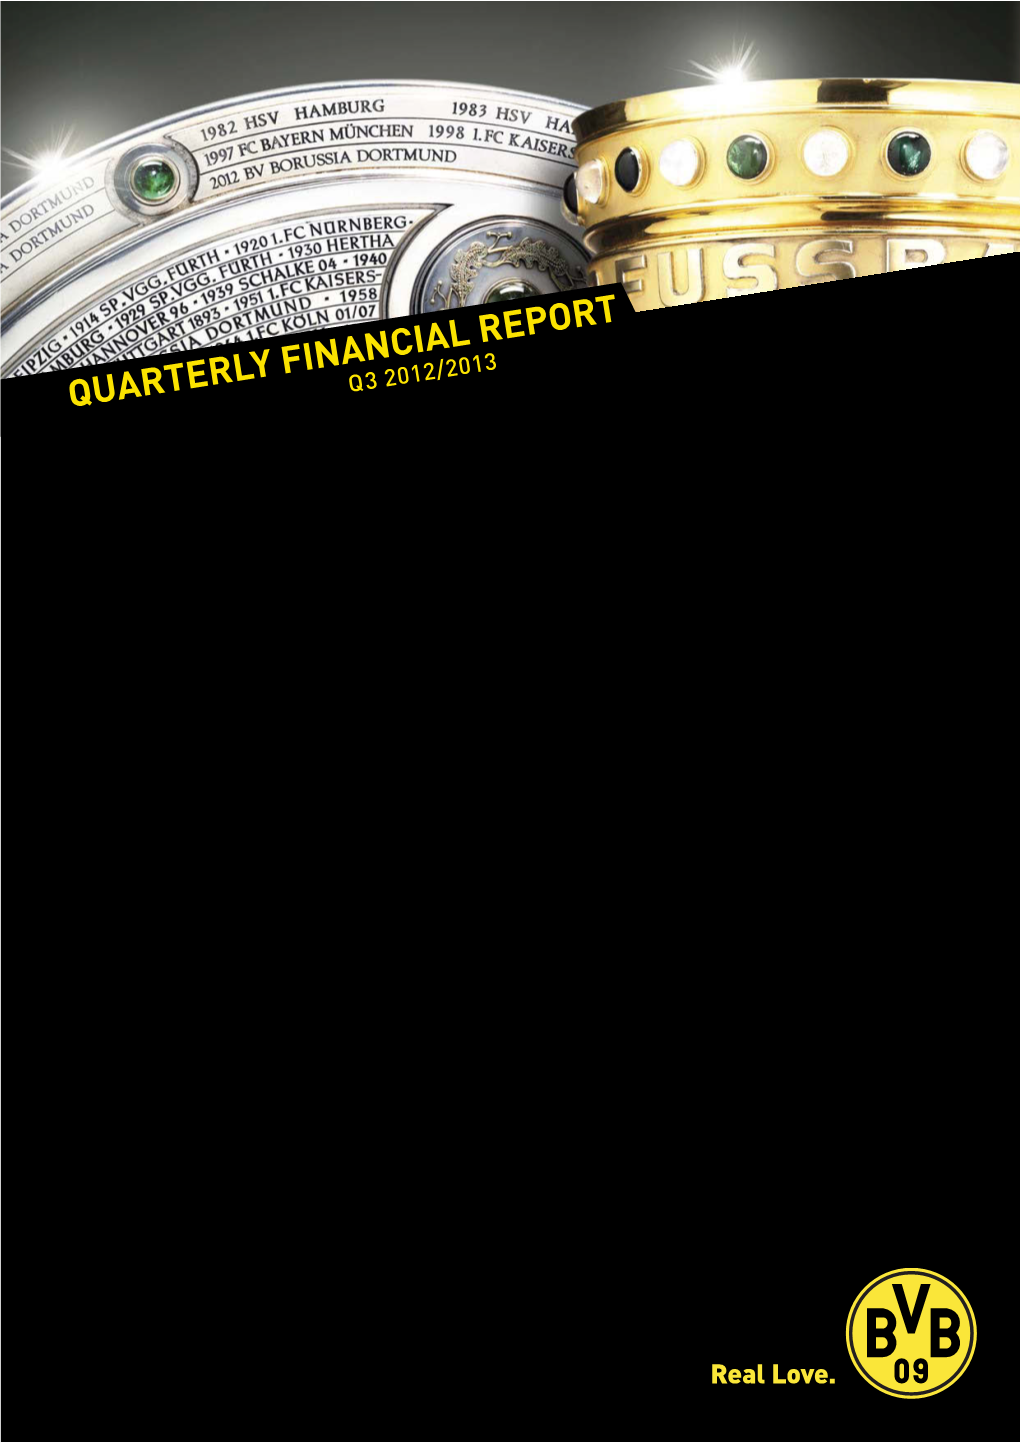 QUARTERLY FINANCIAL REPORT Q3 2012/2013 BORUSSIA DORTMUND QUARTERLY FINANCIAL REPORT from 01 January to 31 March 2013